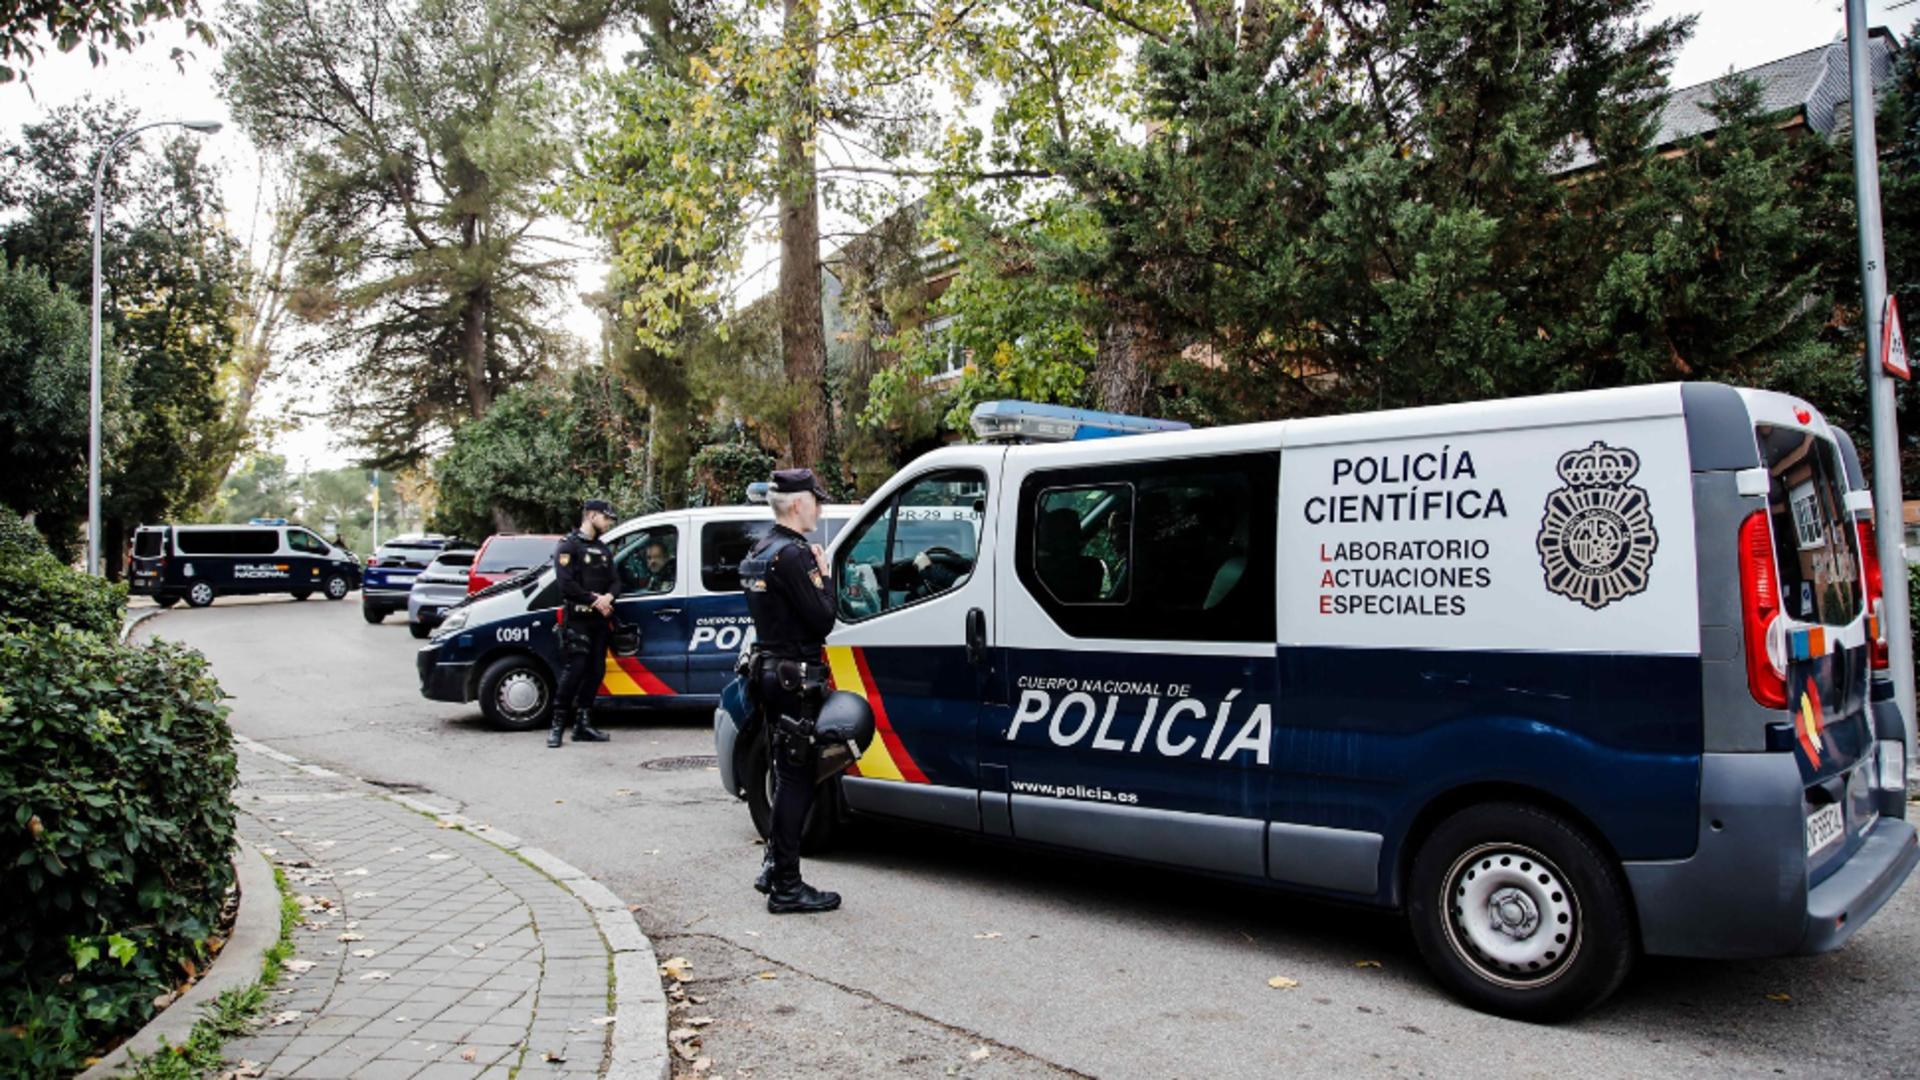 Român de 19 ani, din Spania, ucis cu sânge rece. Foto/Profimedia